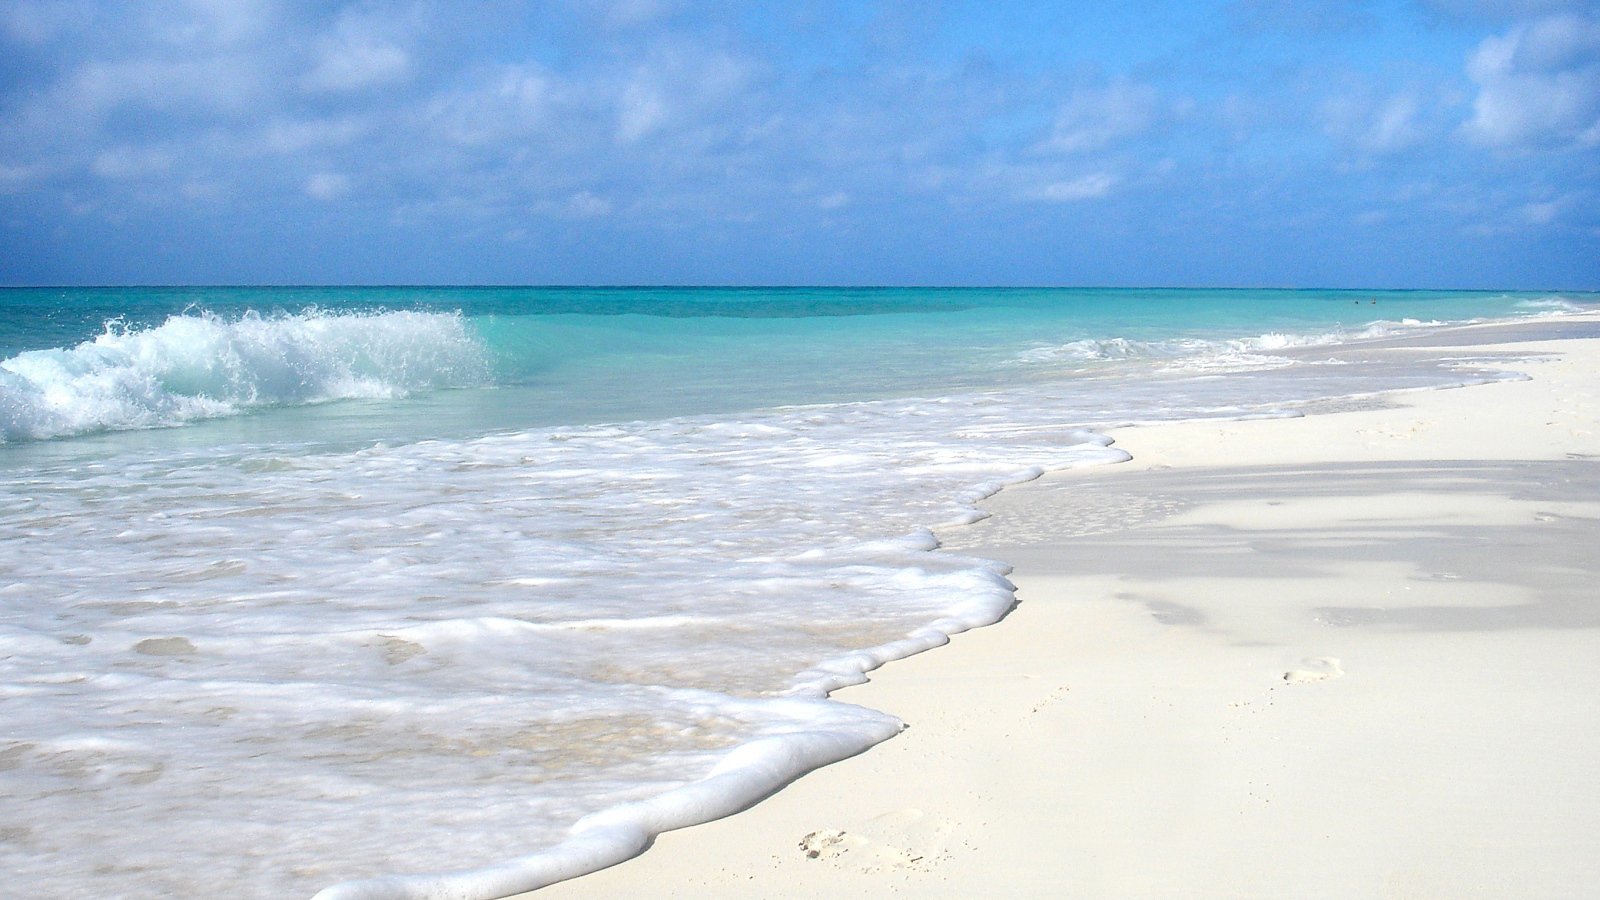 Чистый белый песок на пляже с голубой водой